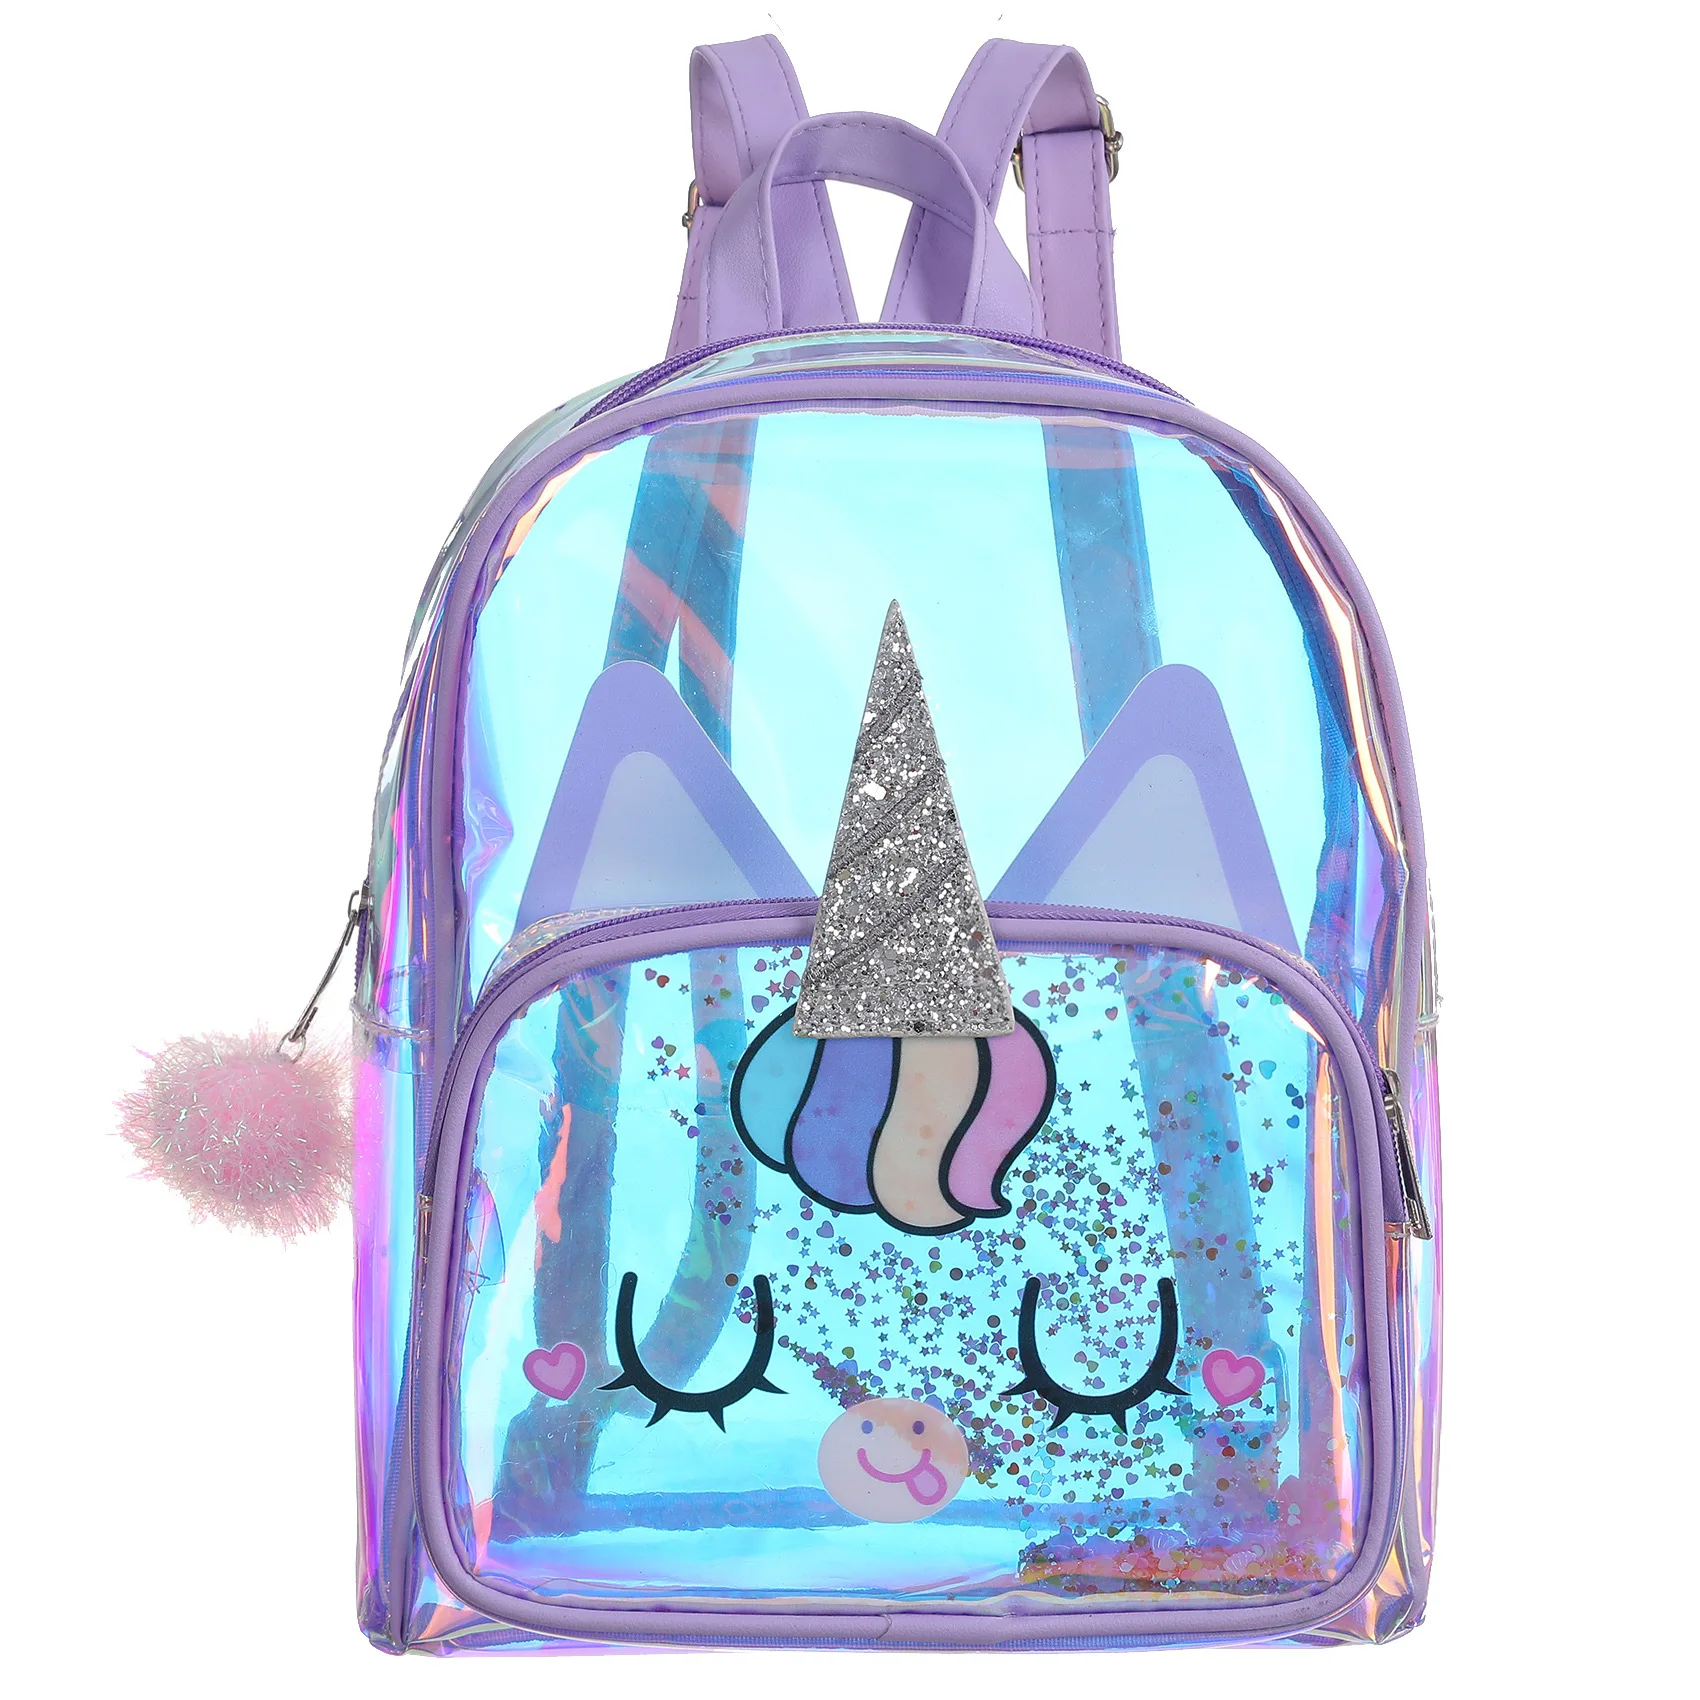 

JANHE mochilas kawaii Beg LaserTransparent Bagpack Girl Schoolbag Toddler Satchel Purse Kid Unicorn Bookbag Clear Backpack